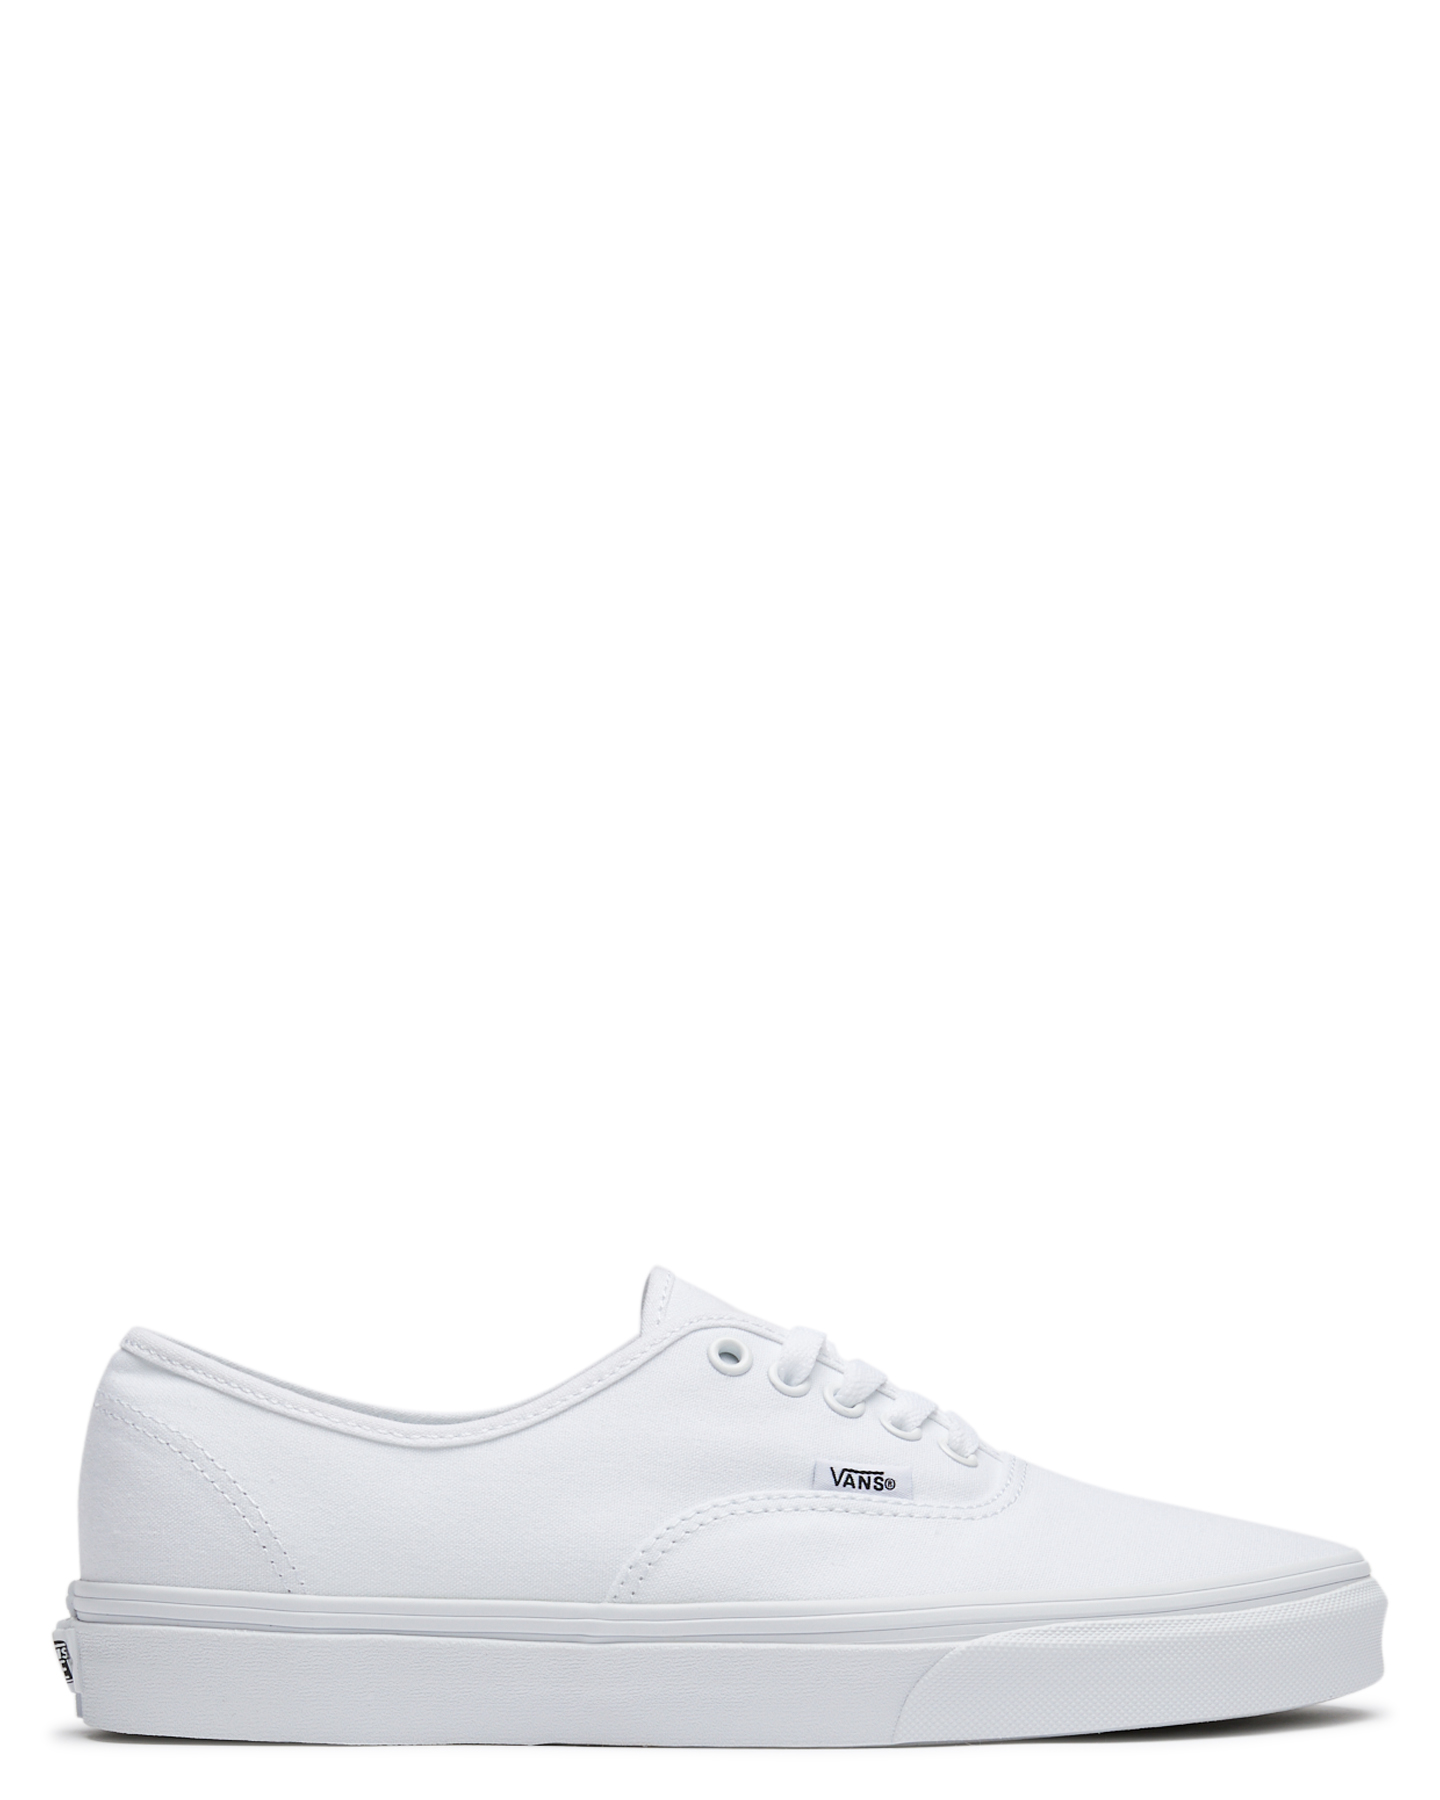 Vans Womens Authentic Shoe - True White 